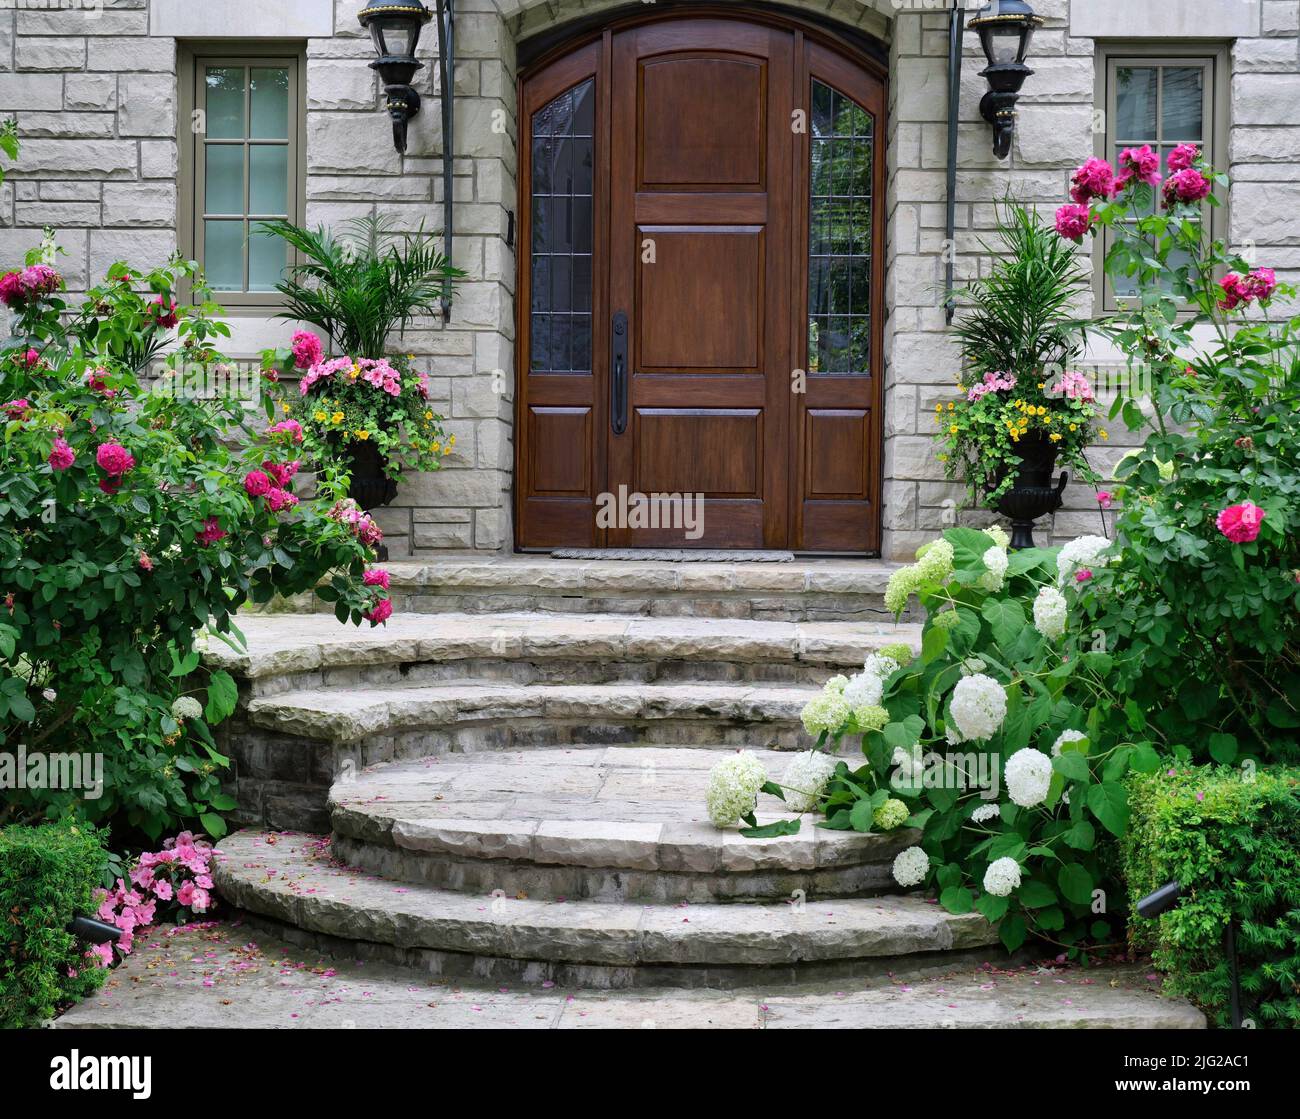 Entrée à la maison avec une élégante porte en bois entourée de belles fleurs Banque D'Images